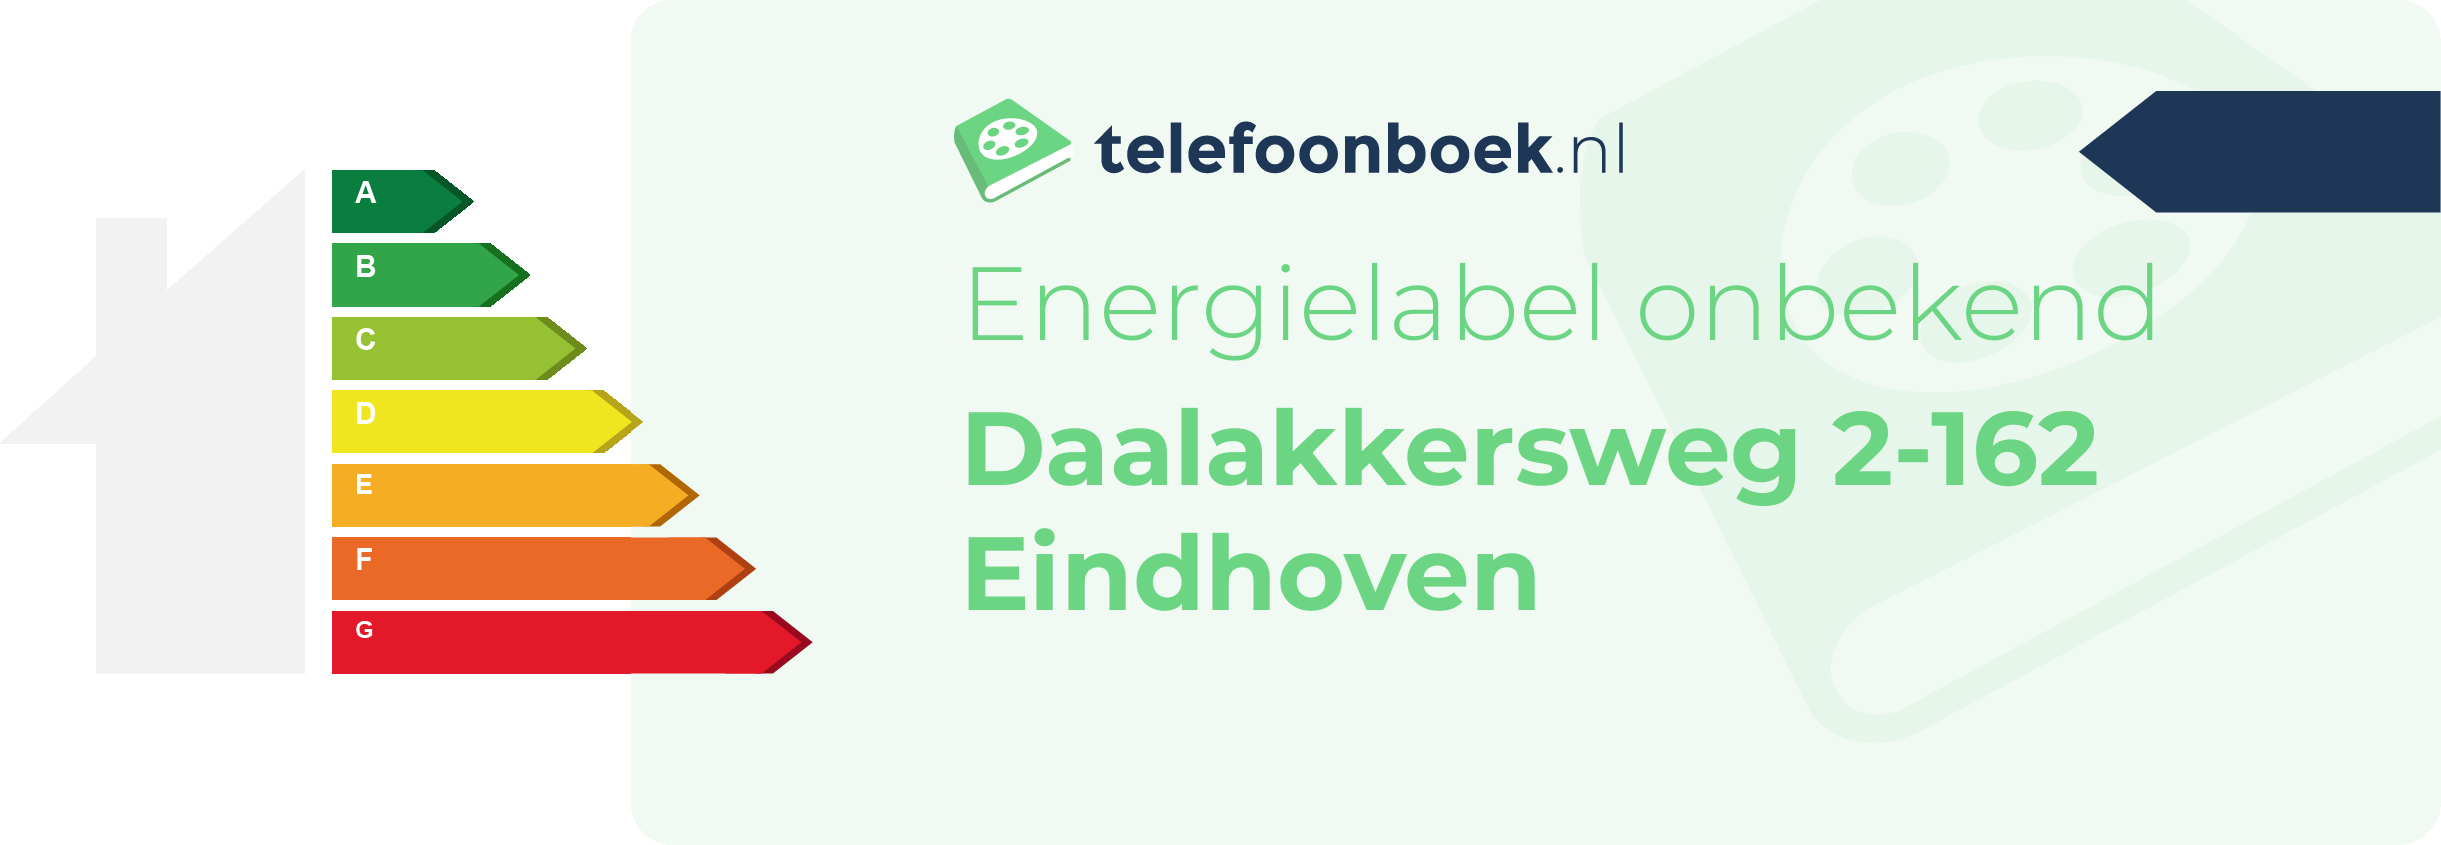 Energielabel Daalakkersweg 2-162 Eindhoven